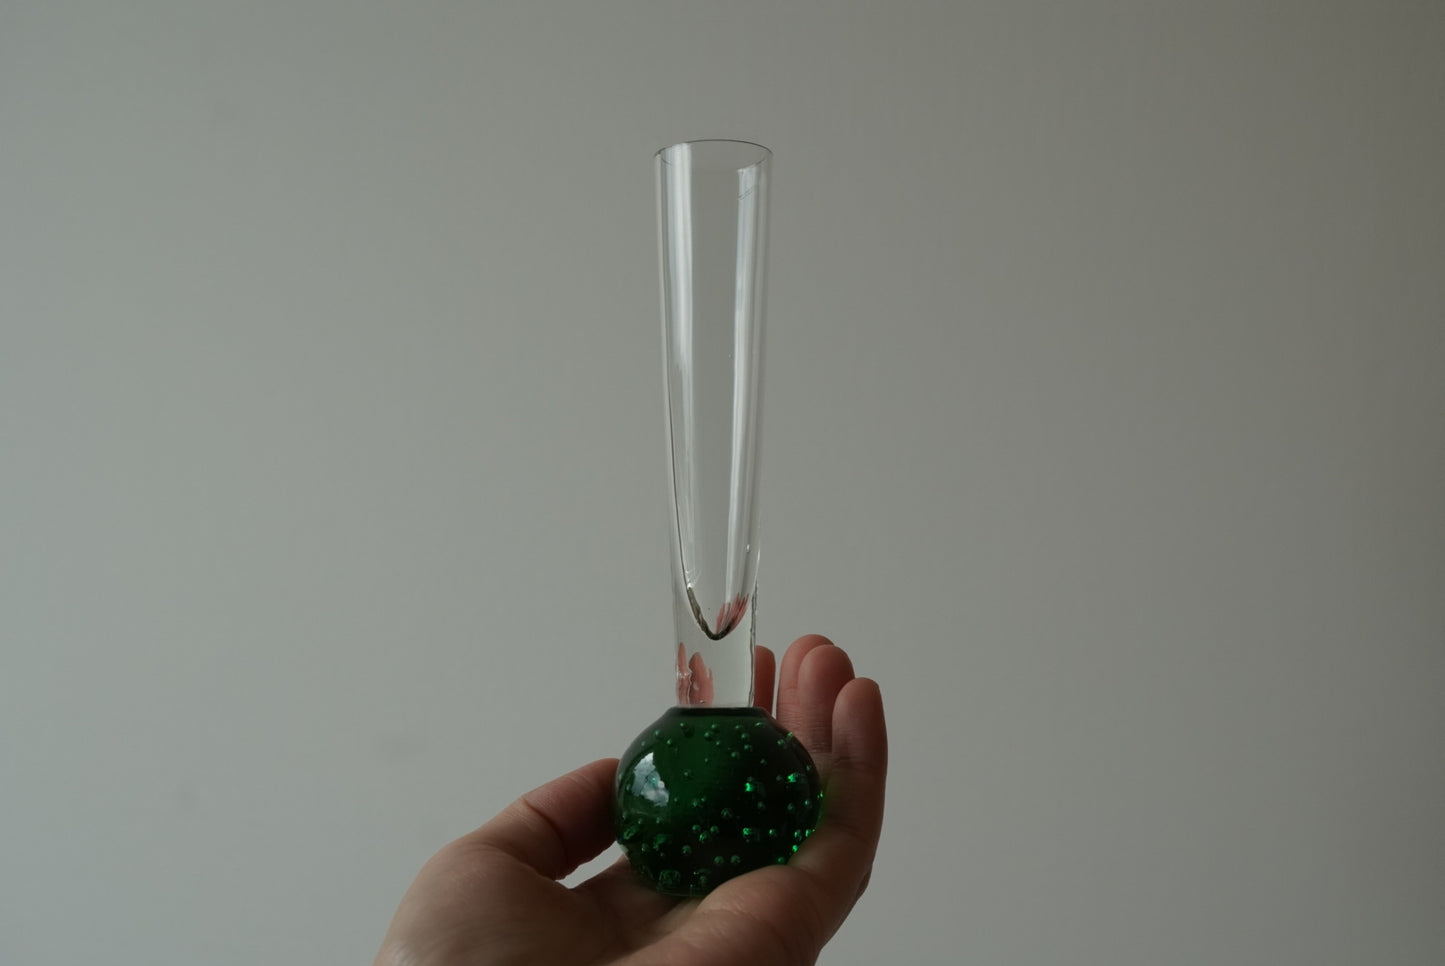 Swedish Vase - Mini green